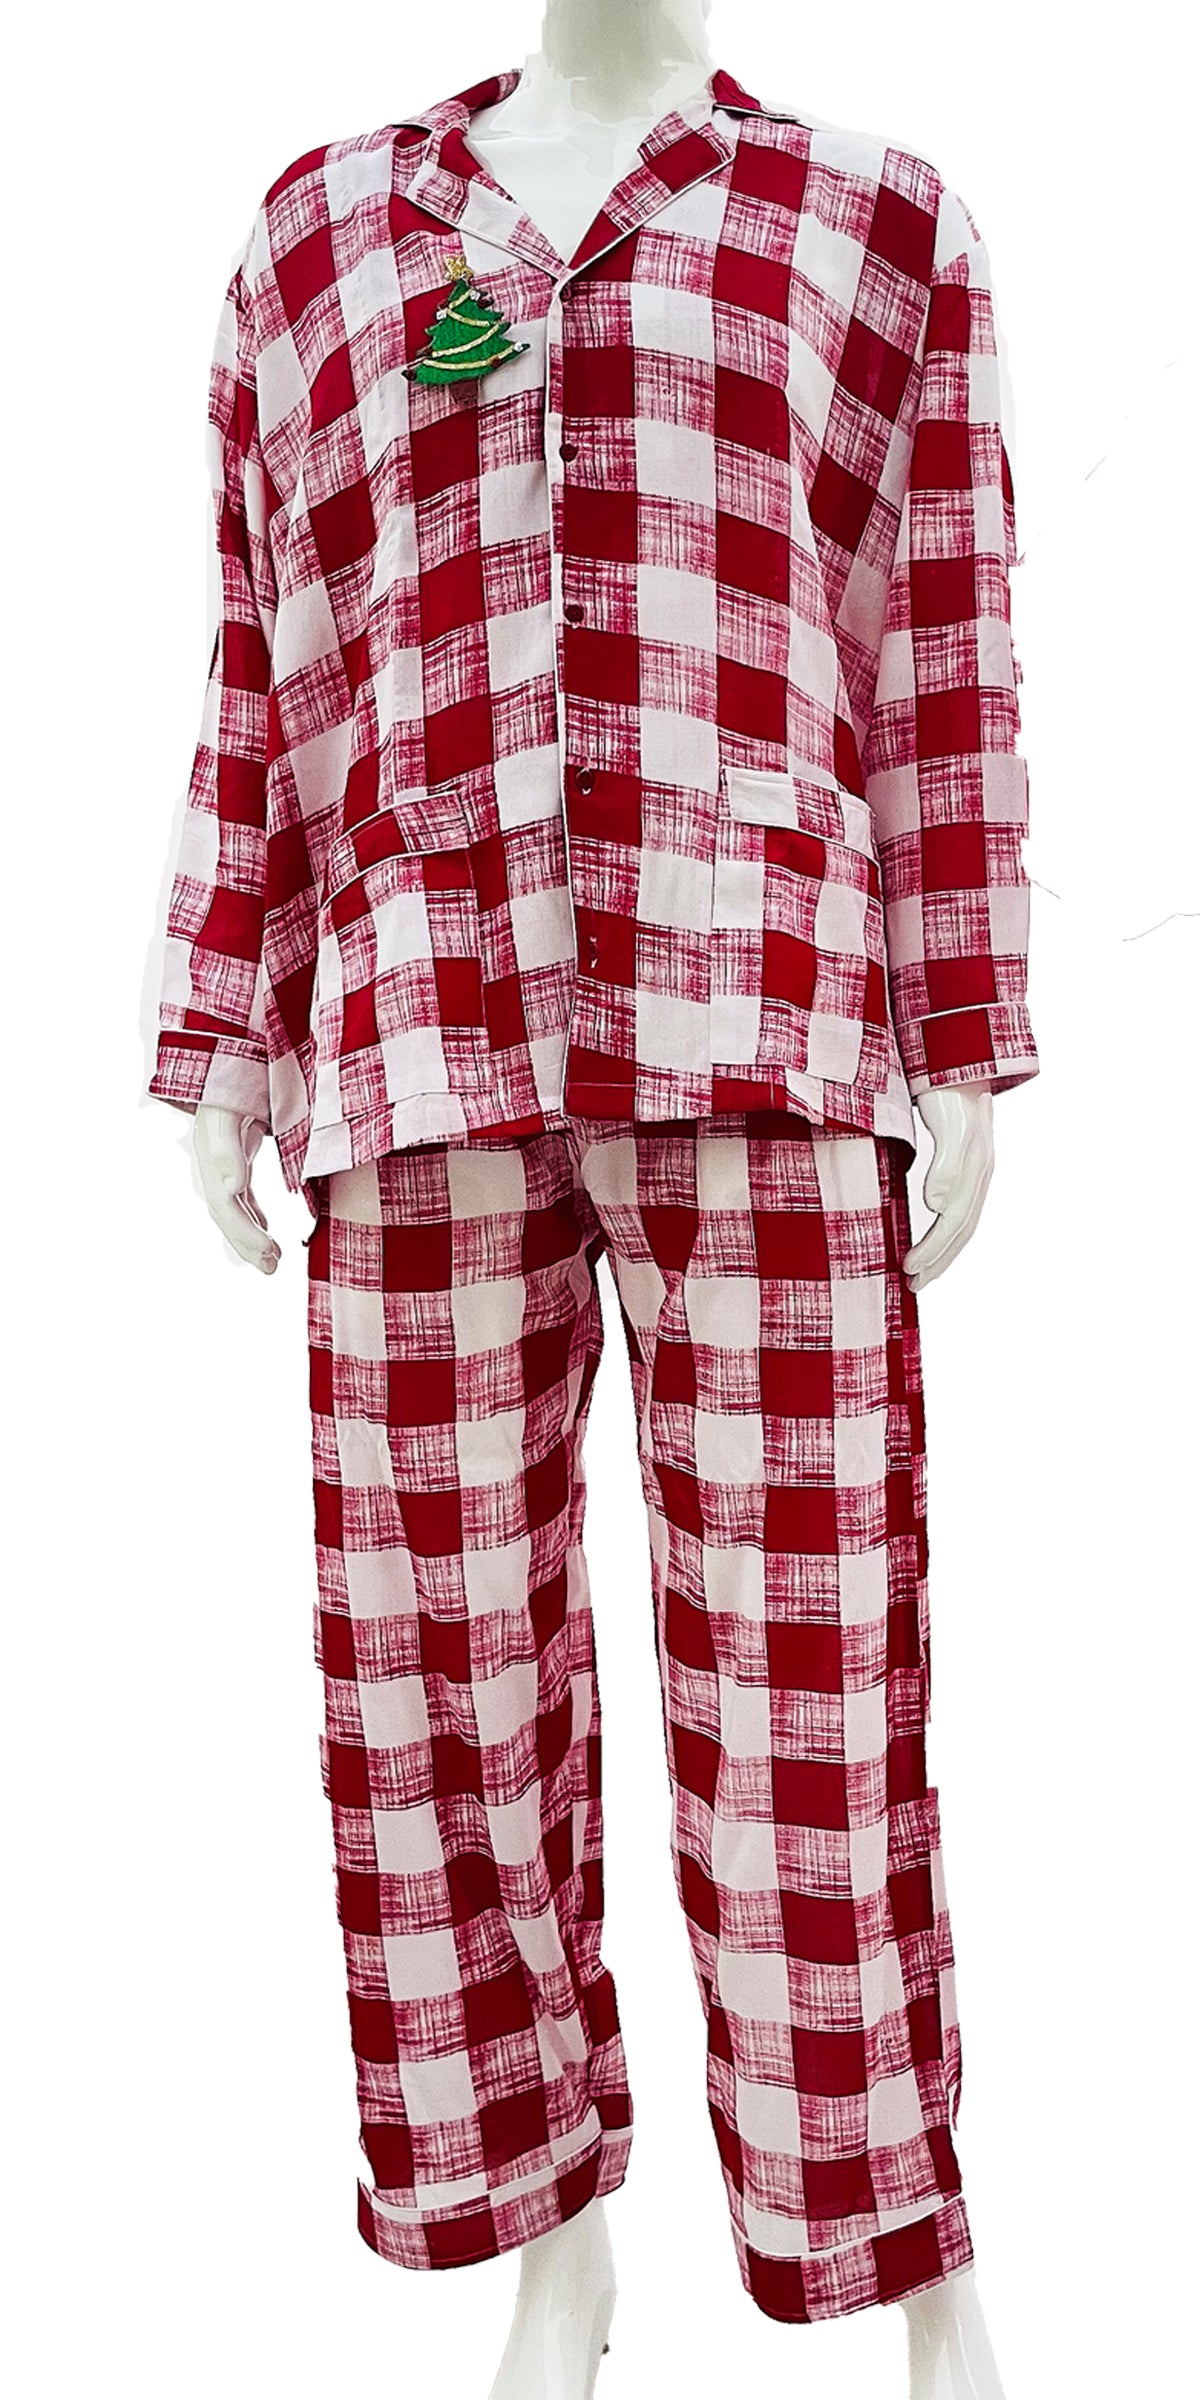 Men's Christmas Pajamas Red Rayon Check print Pjs